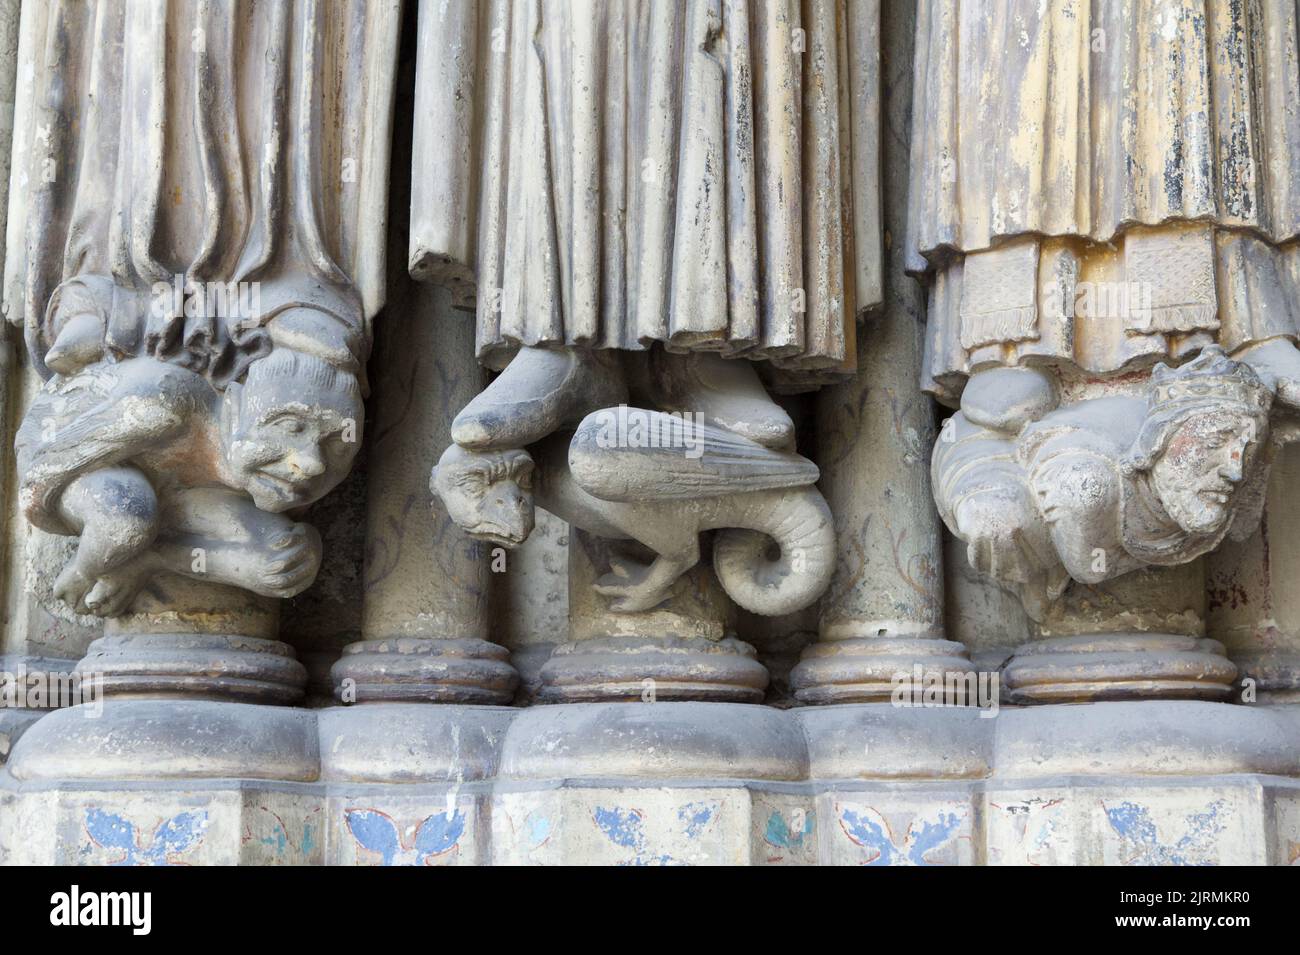 Sinners - Porch of Saint-Germain l’Auxerrois, Place du Louvre, Paris Stock Photo